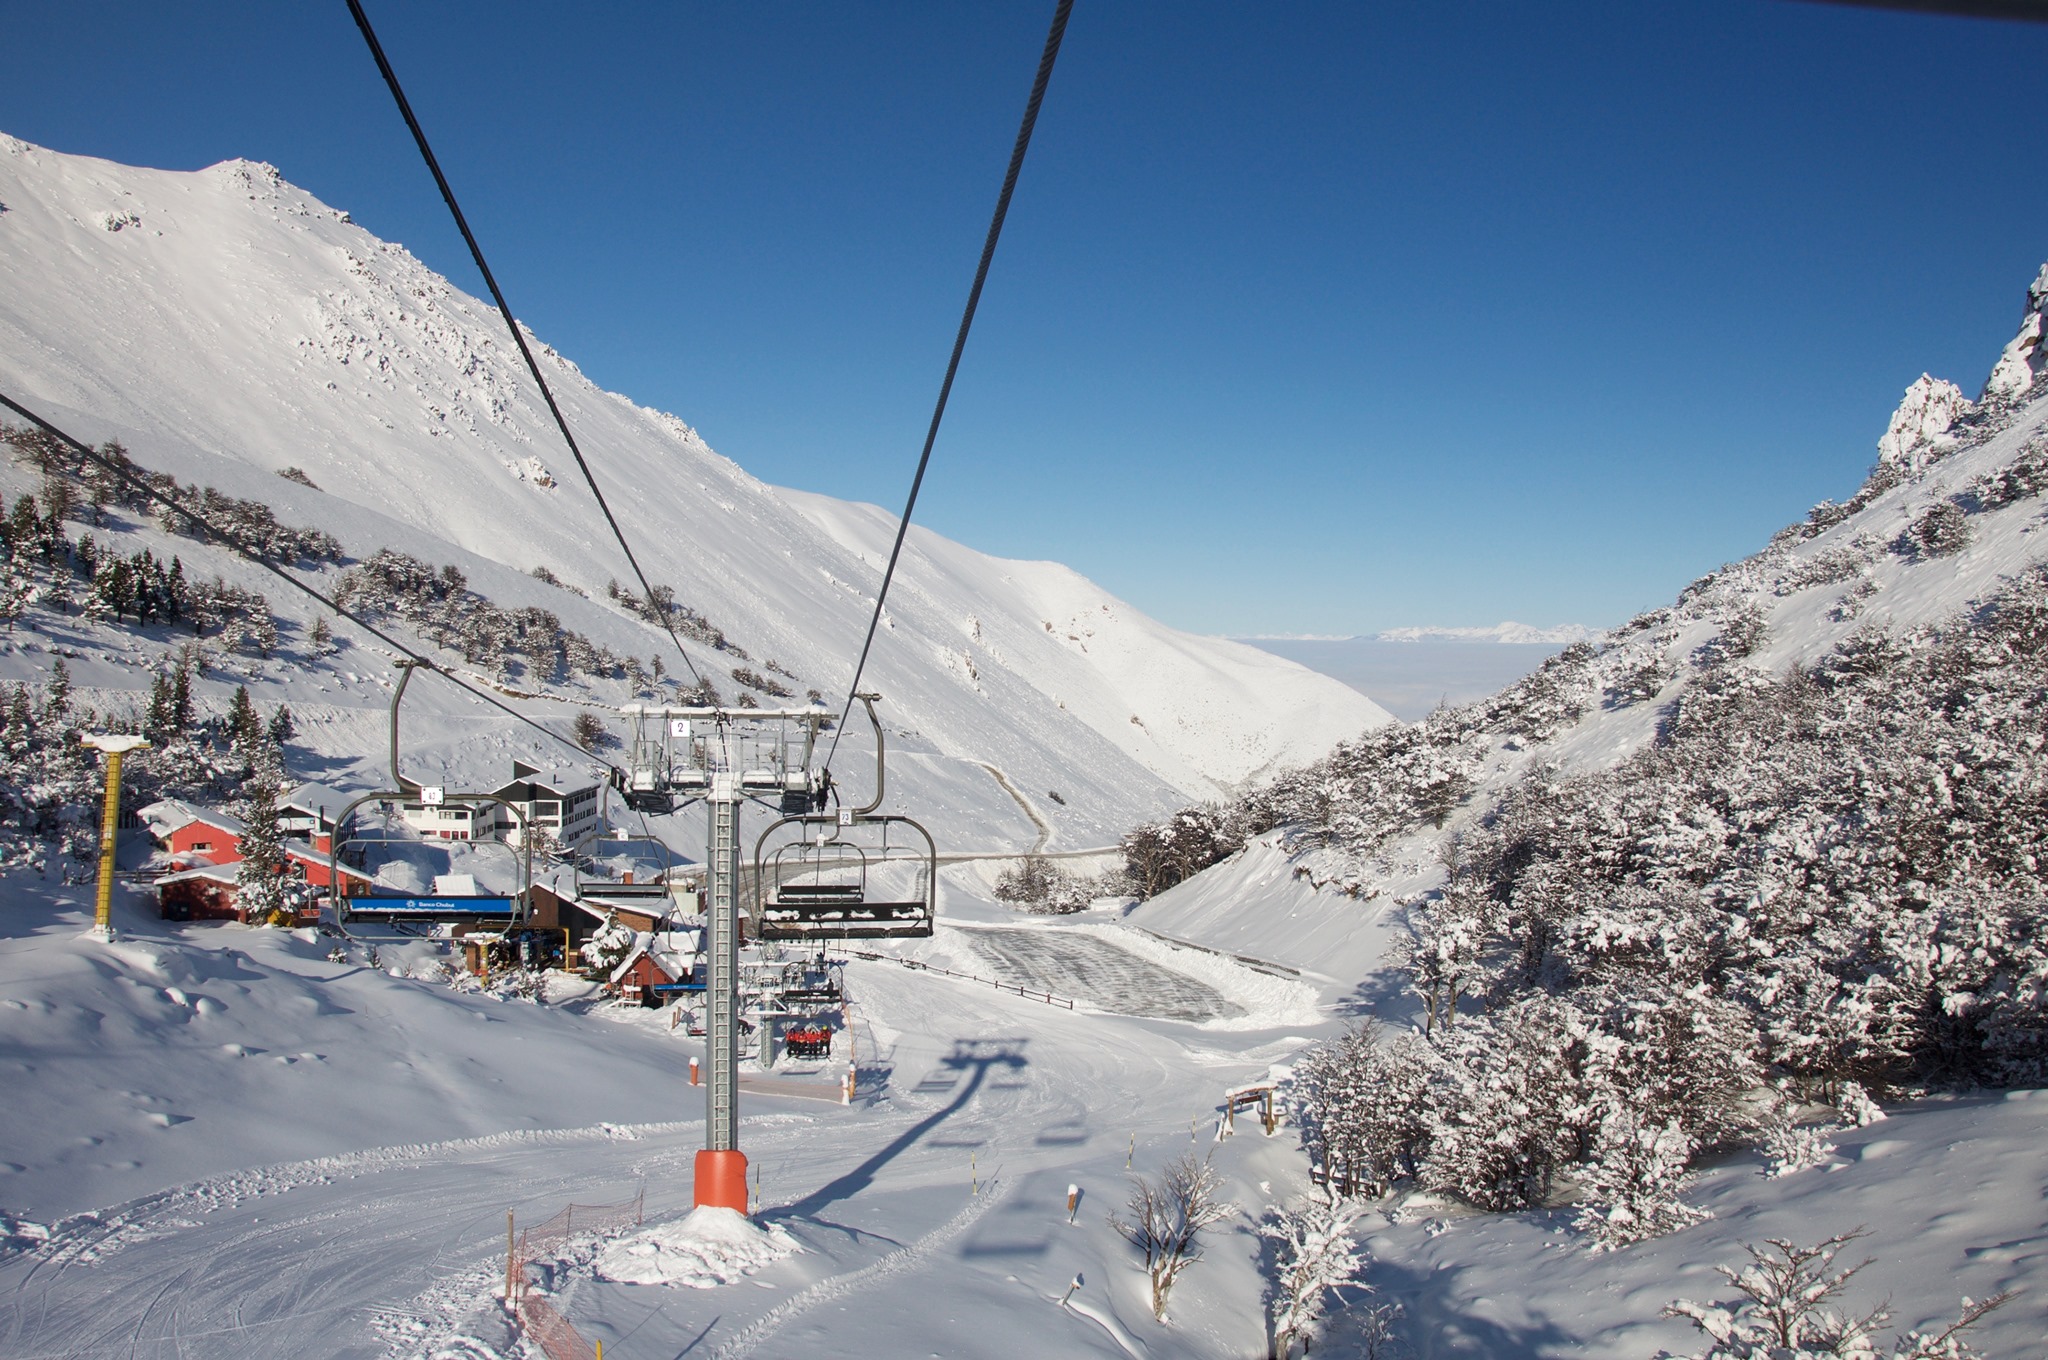 El centro de esquí y snowboard La Hoya, está ubicado a 12 kilómetros de Esquel. Fotos: La Hoya Centro de Ski.